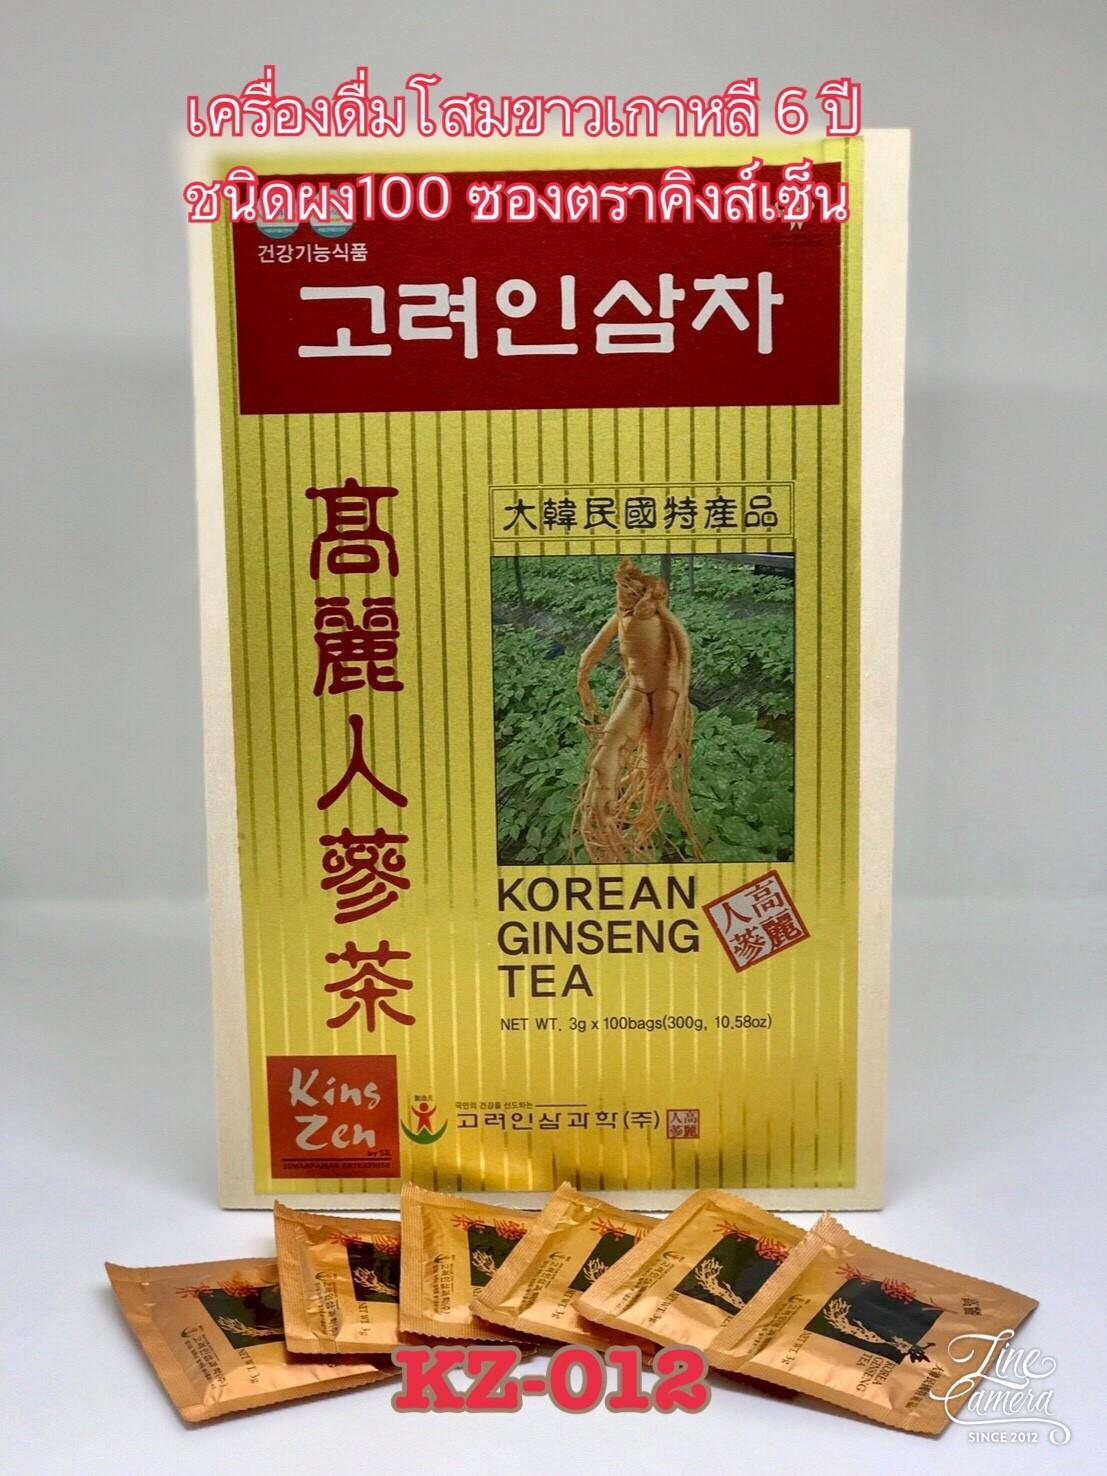 เครื่องดื่มโสมเกาหลี 6 ปี ชนิดผง 100  ซอง (ซองละ 3 กรัม) ตราคิงส์เซ็น